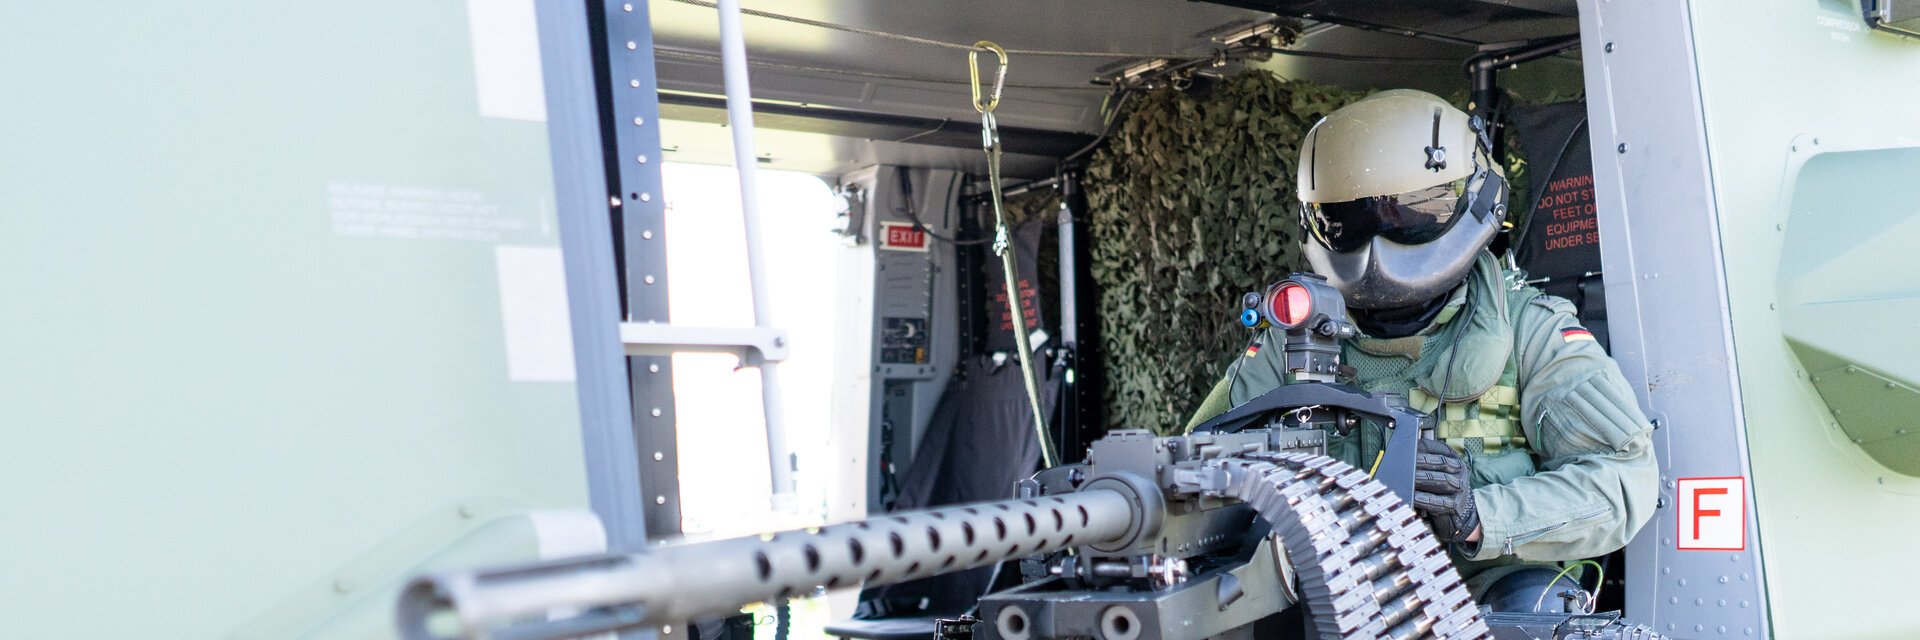 BordschÃ¼tze in Uniform sitzt mit Maschinengewehr in der SeitentÃ¼r eines Hubschraubers